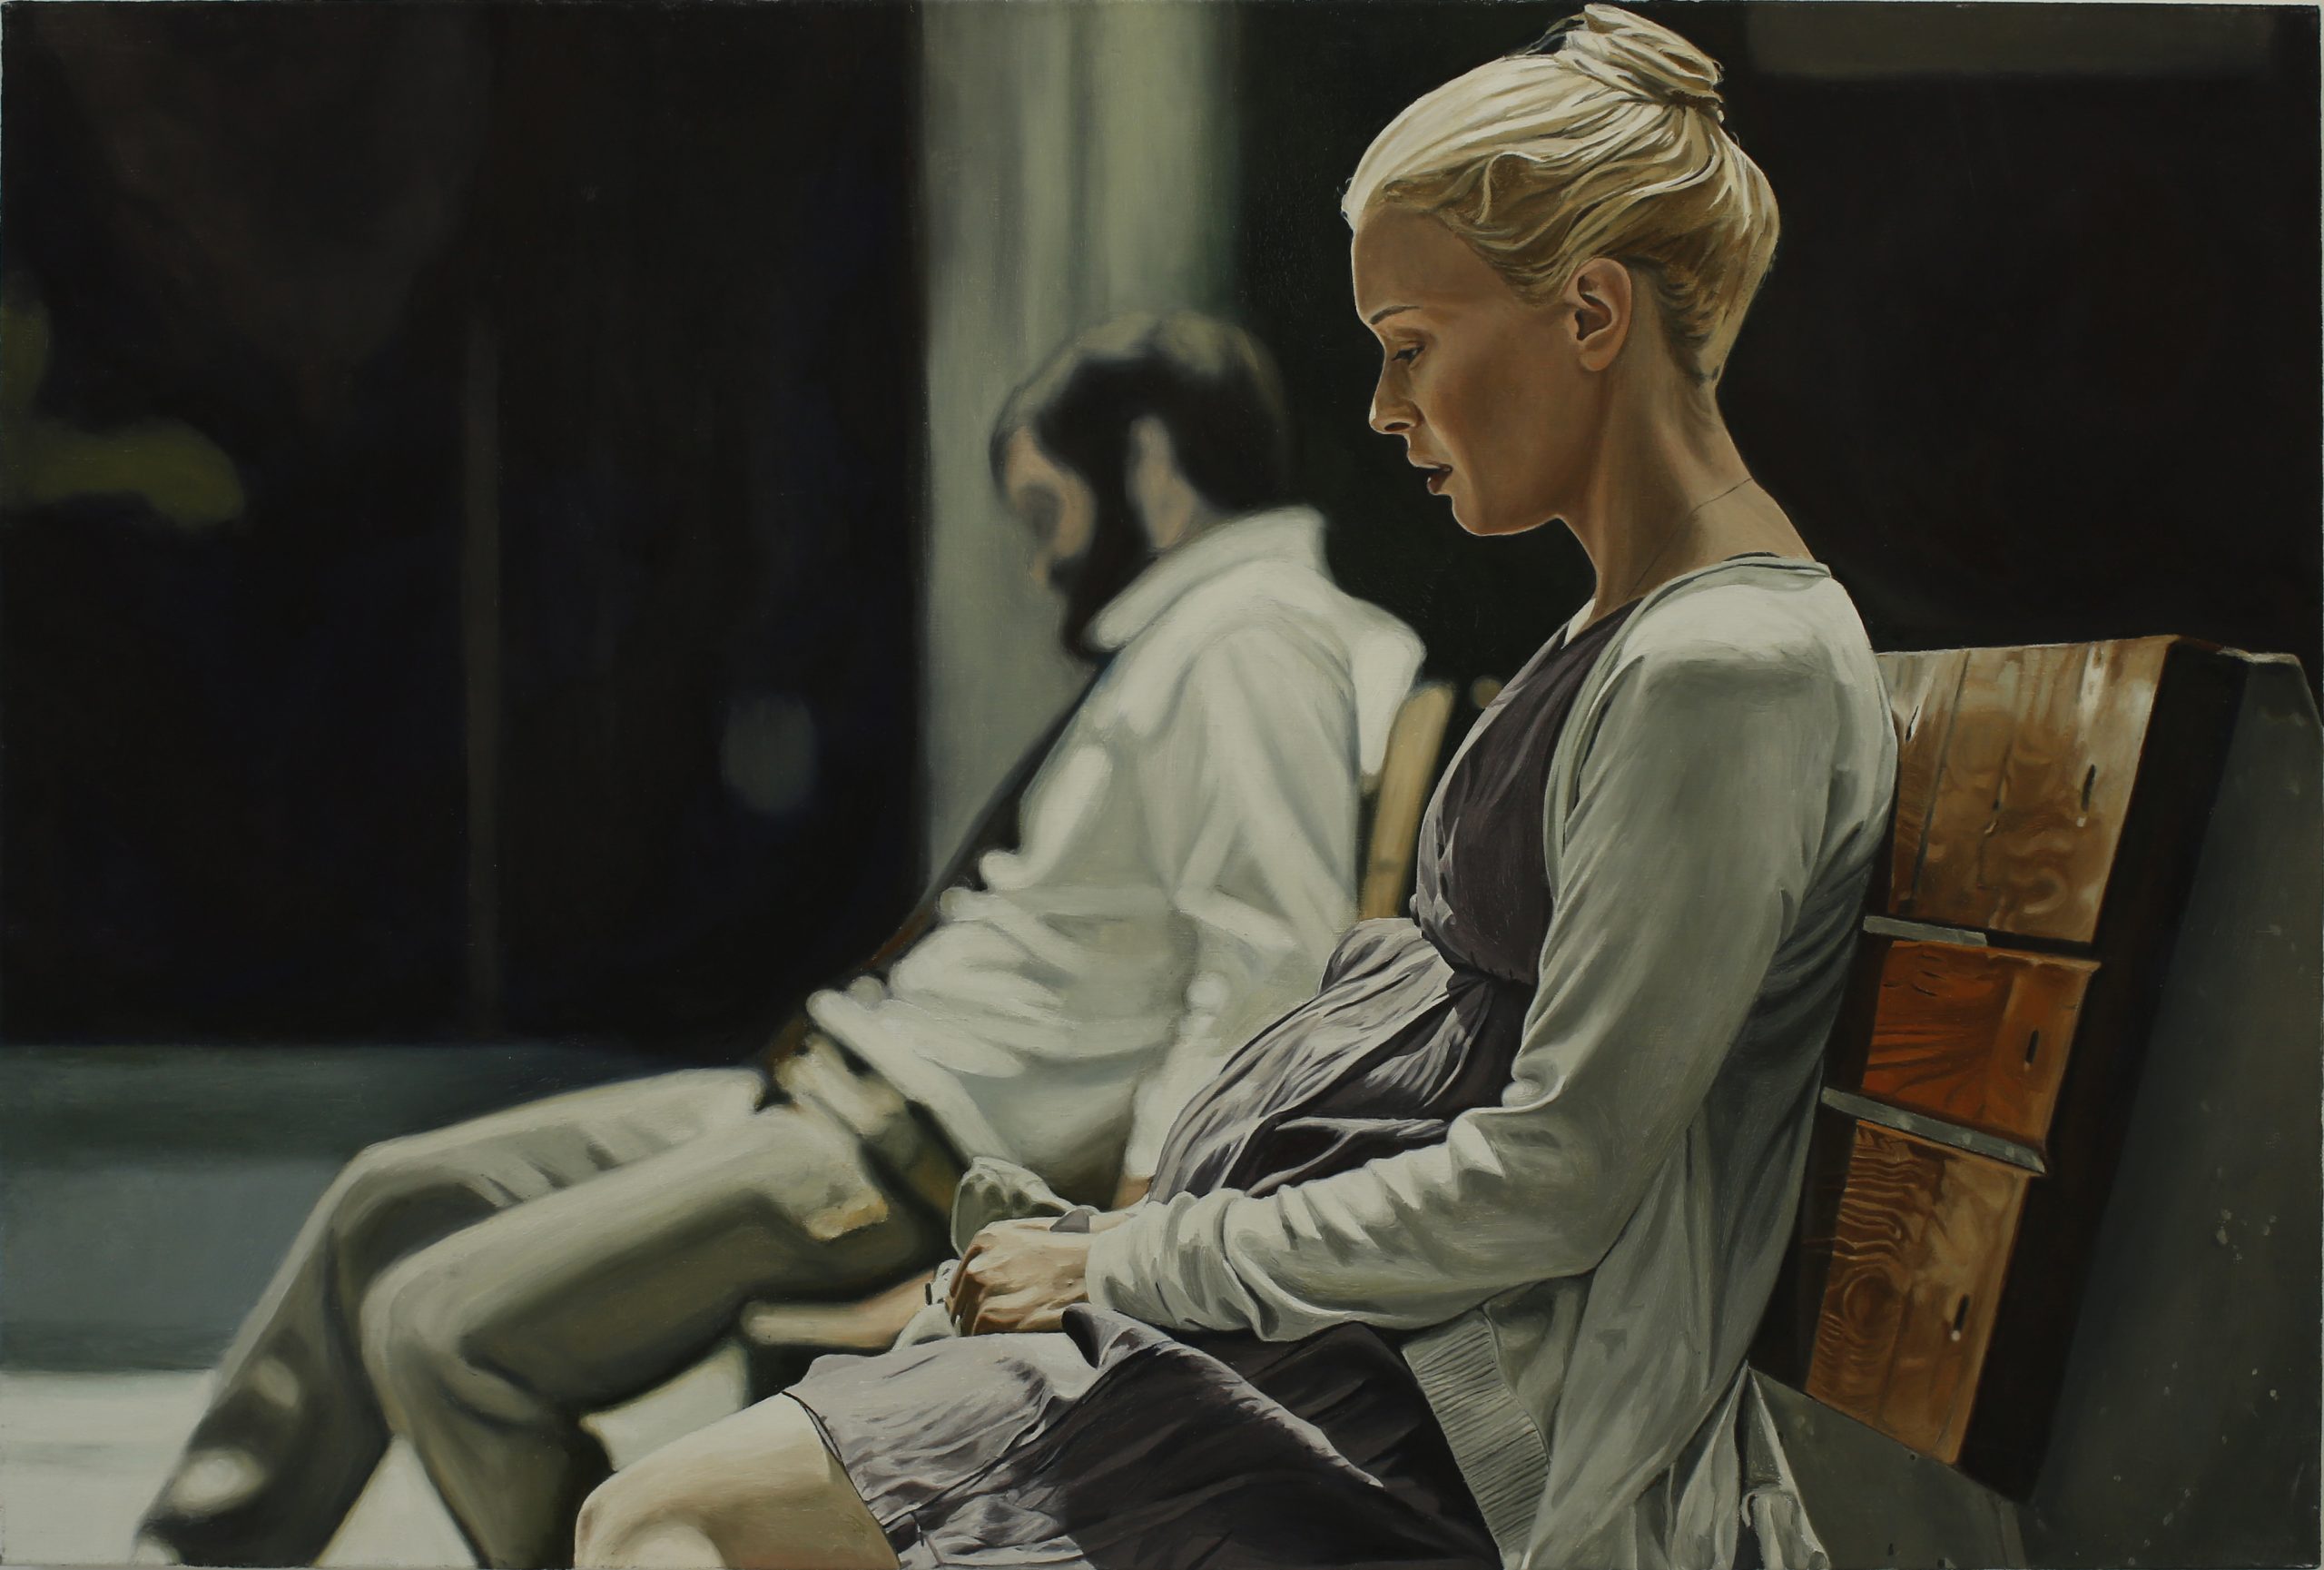 Niklas Holmgren, "Sittande", 2016, Oil on canvas, 68 x 101 cm